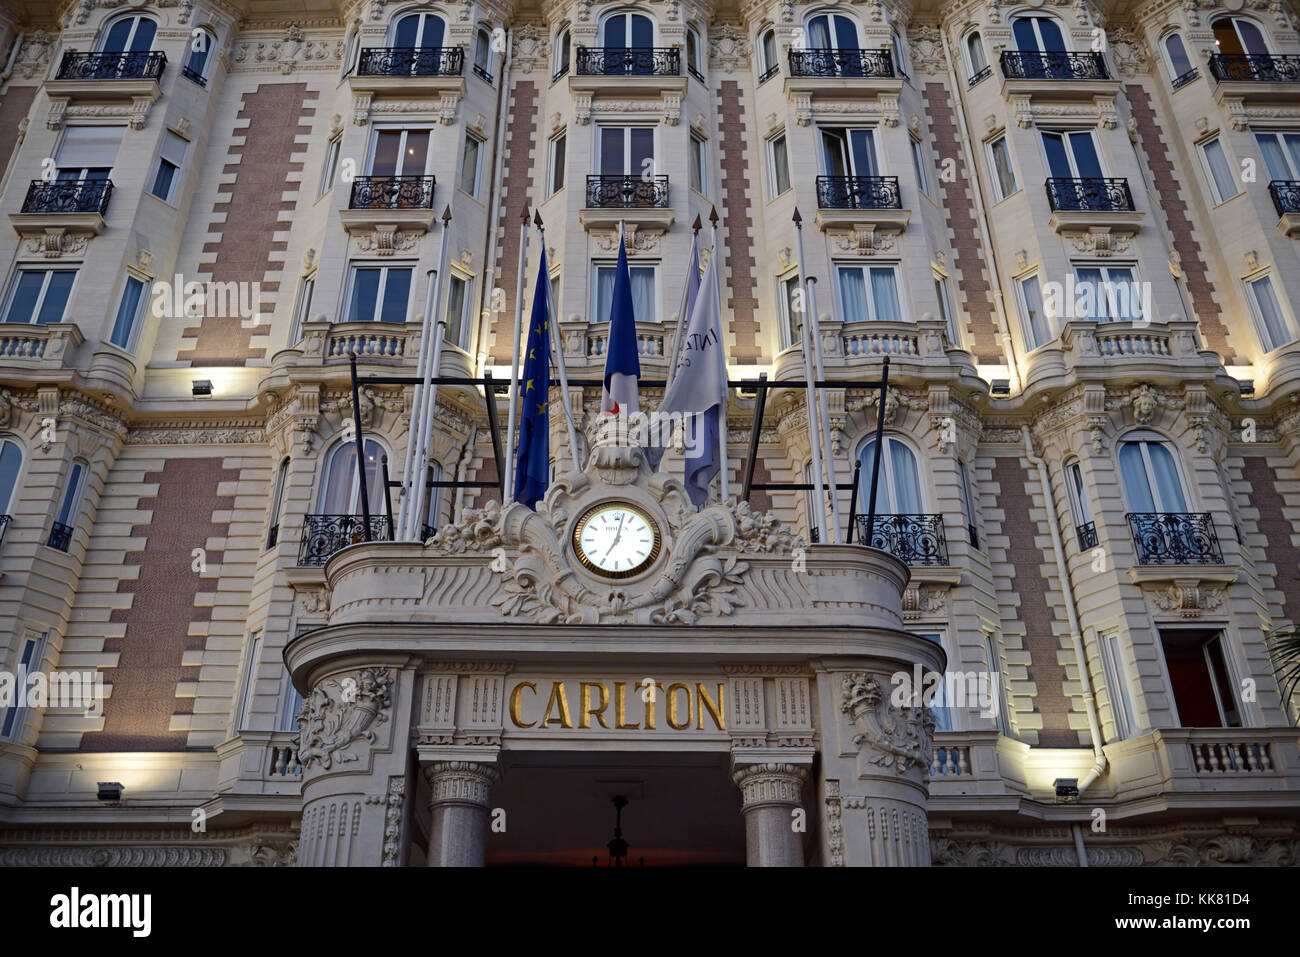 Il Luxury InterContinental Carlton Hotel, costruito nel 1911, sul Boulevard de la Croisette, Cannes, Alpes-Maritimes, Francia Foto Stock